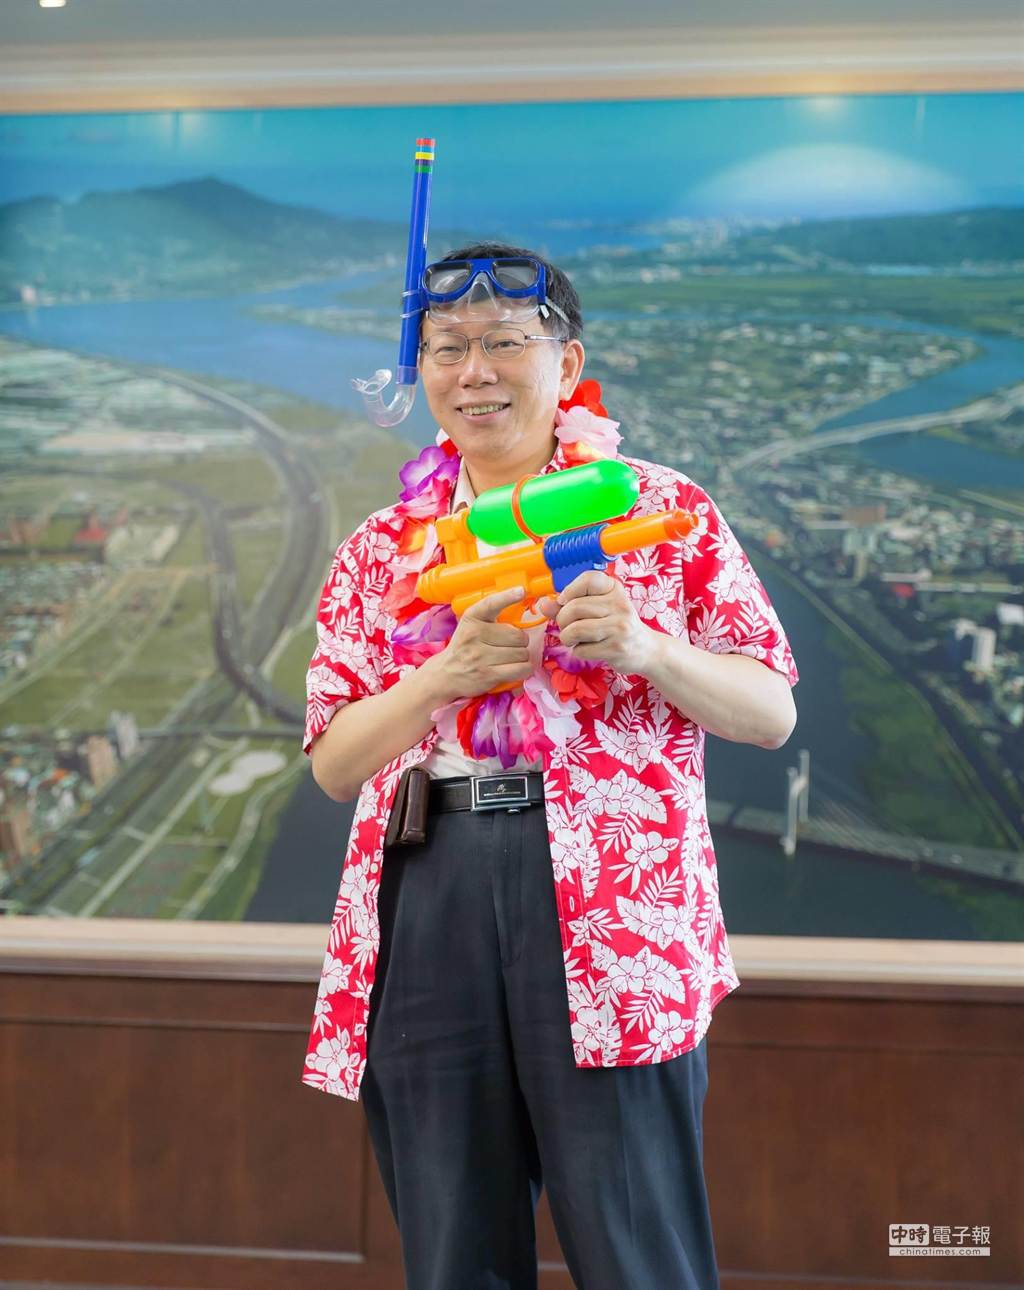 台北市長柯文哲穿上花襯衫拿水槍宣傳2015河岸音樂季。(翻攝柯文哲臉書)